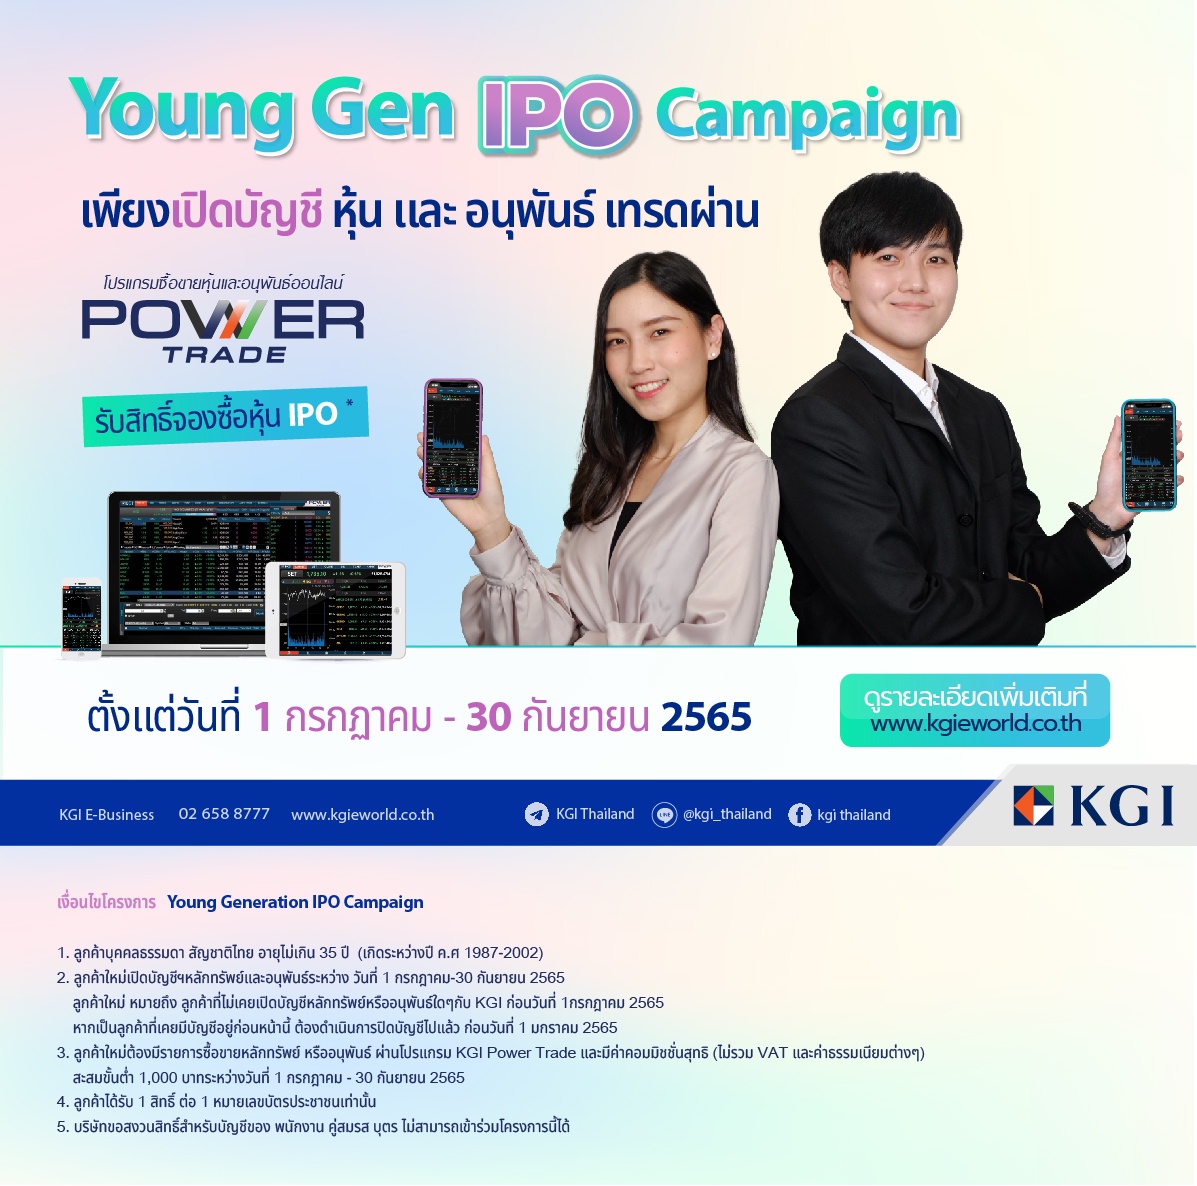 KGI เปิดตัวแคมเปญ Young Gen IPO Campaign ลุ้นรับสิทธิ์จองหุ้น IPO